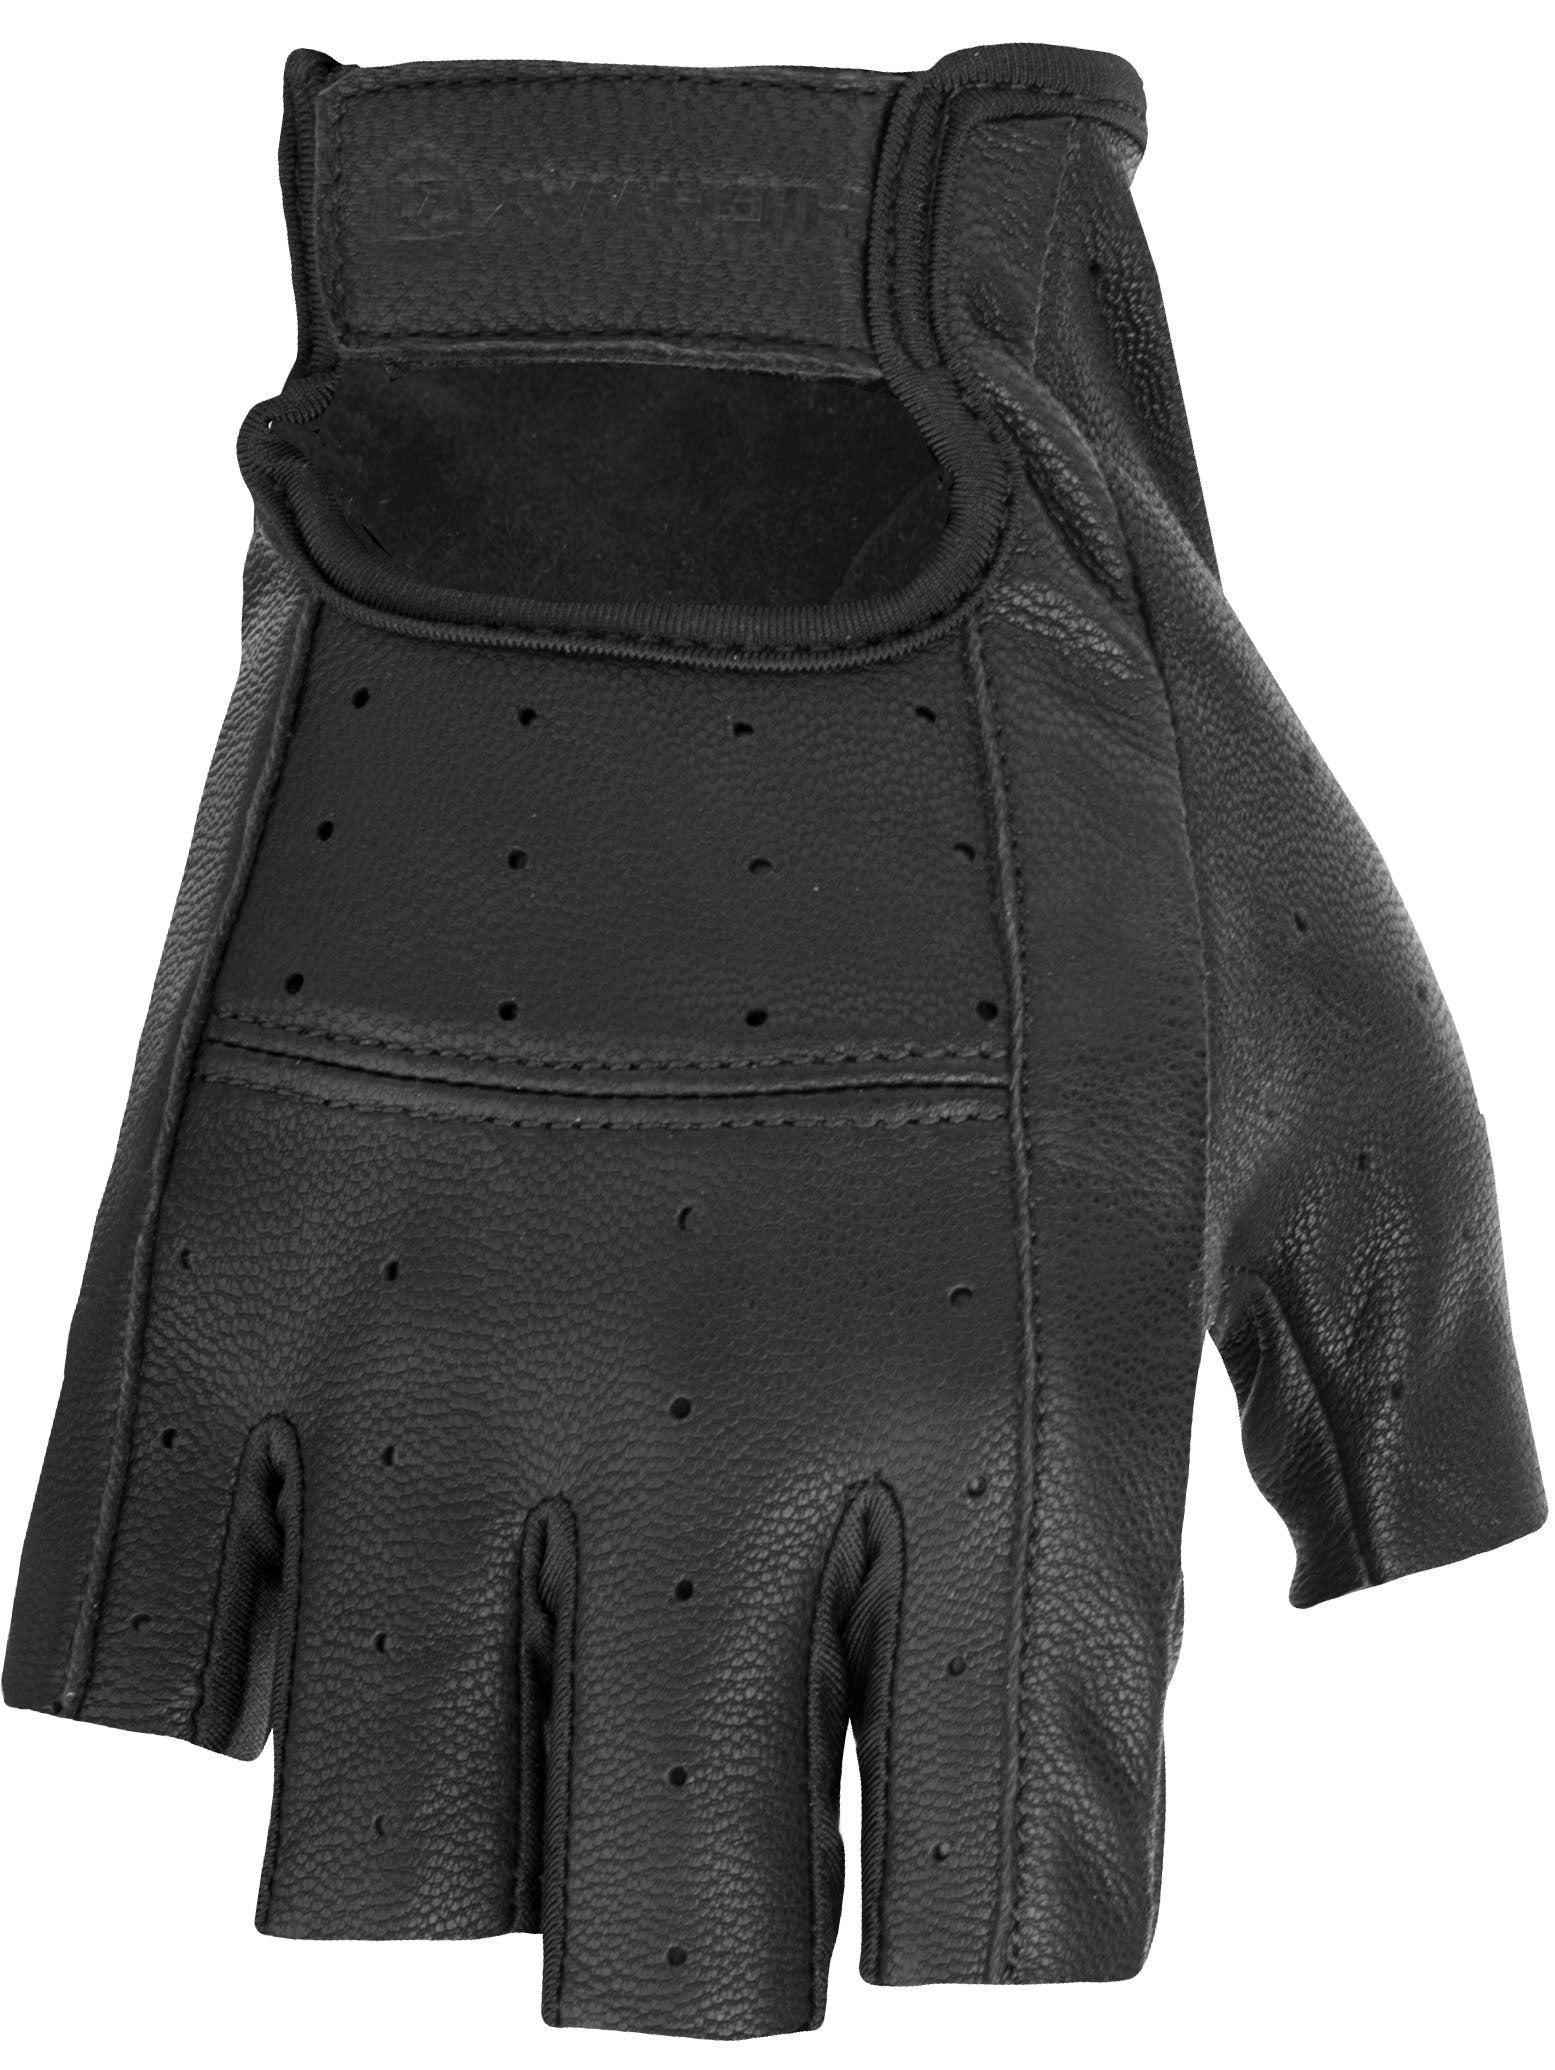 Ranger Gloves Black Md